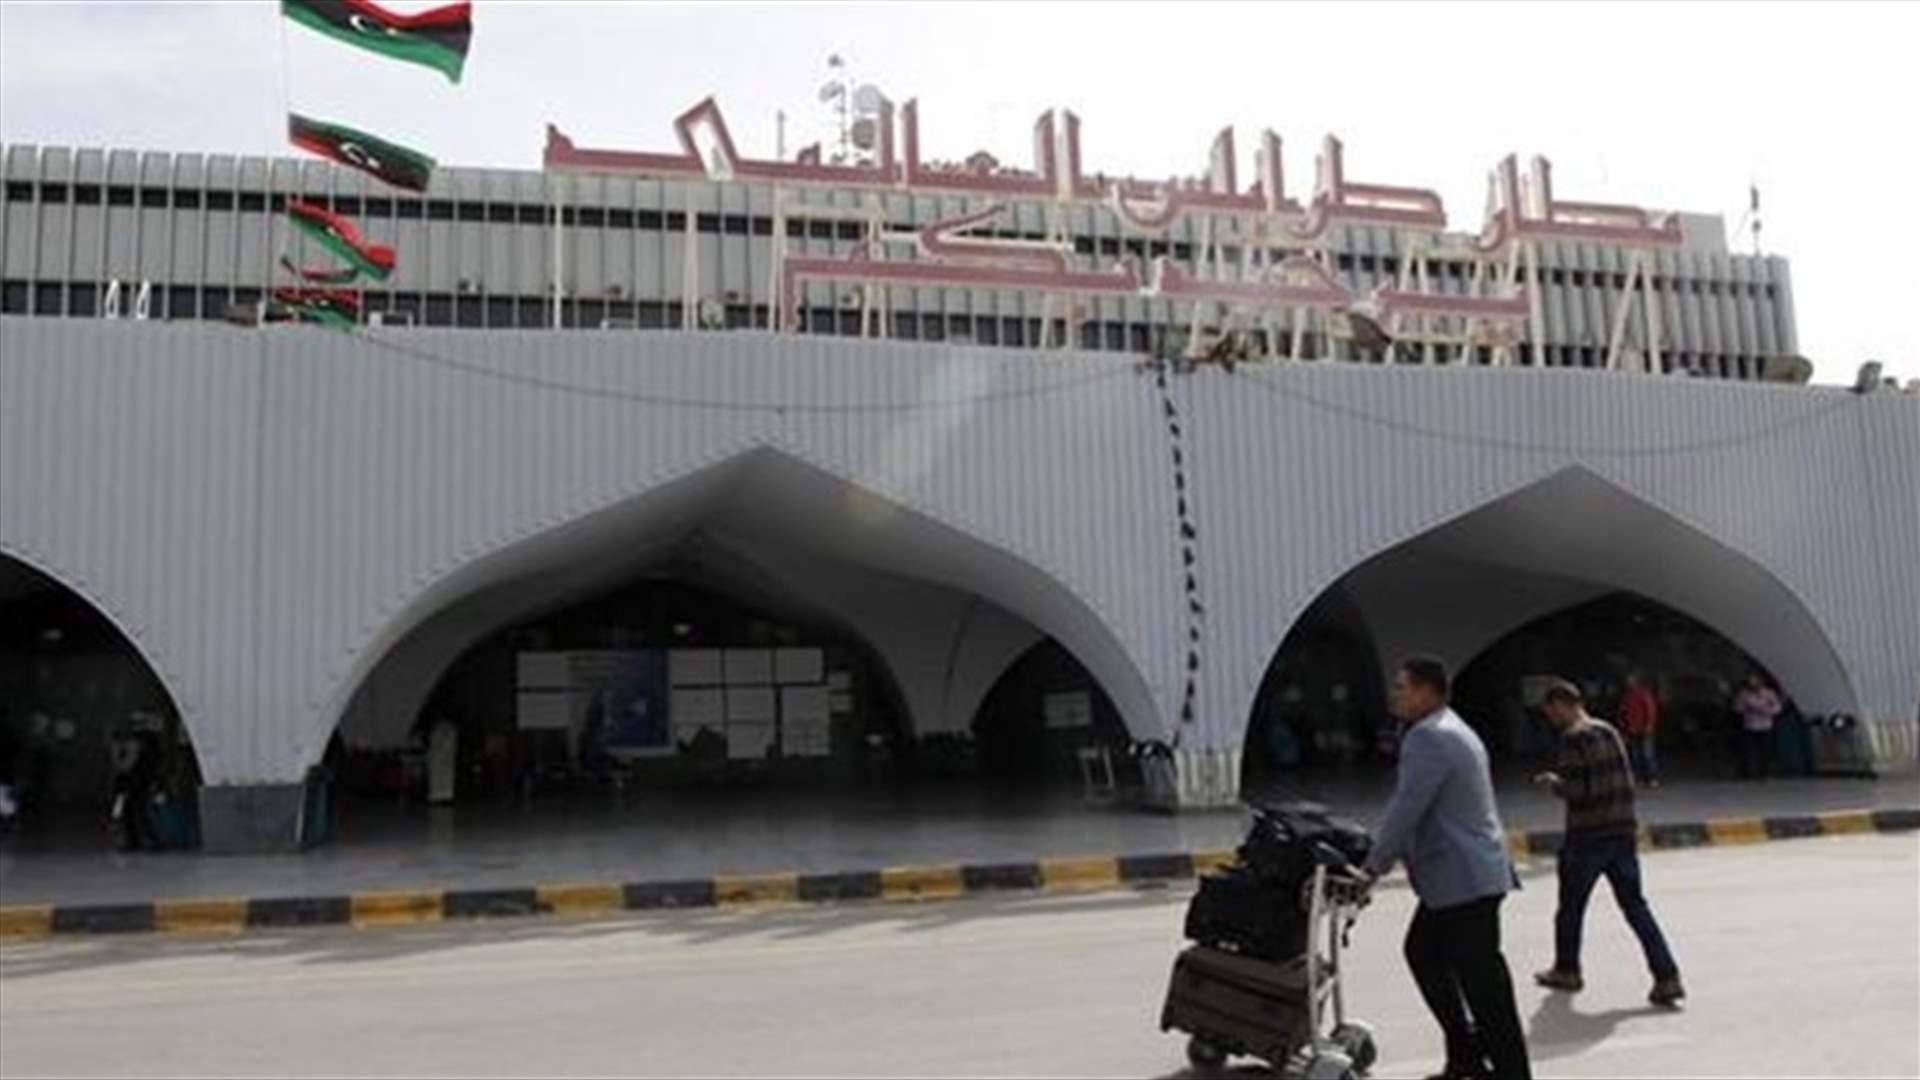 حكومة الوفاق الليبية تعلن استعادة السيطرة على مطار طرابلس... والأمم المتحدة تستأنف محادثات عسكرية